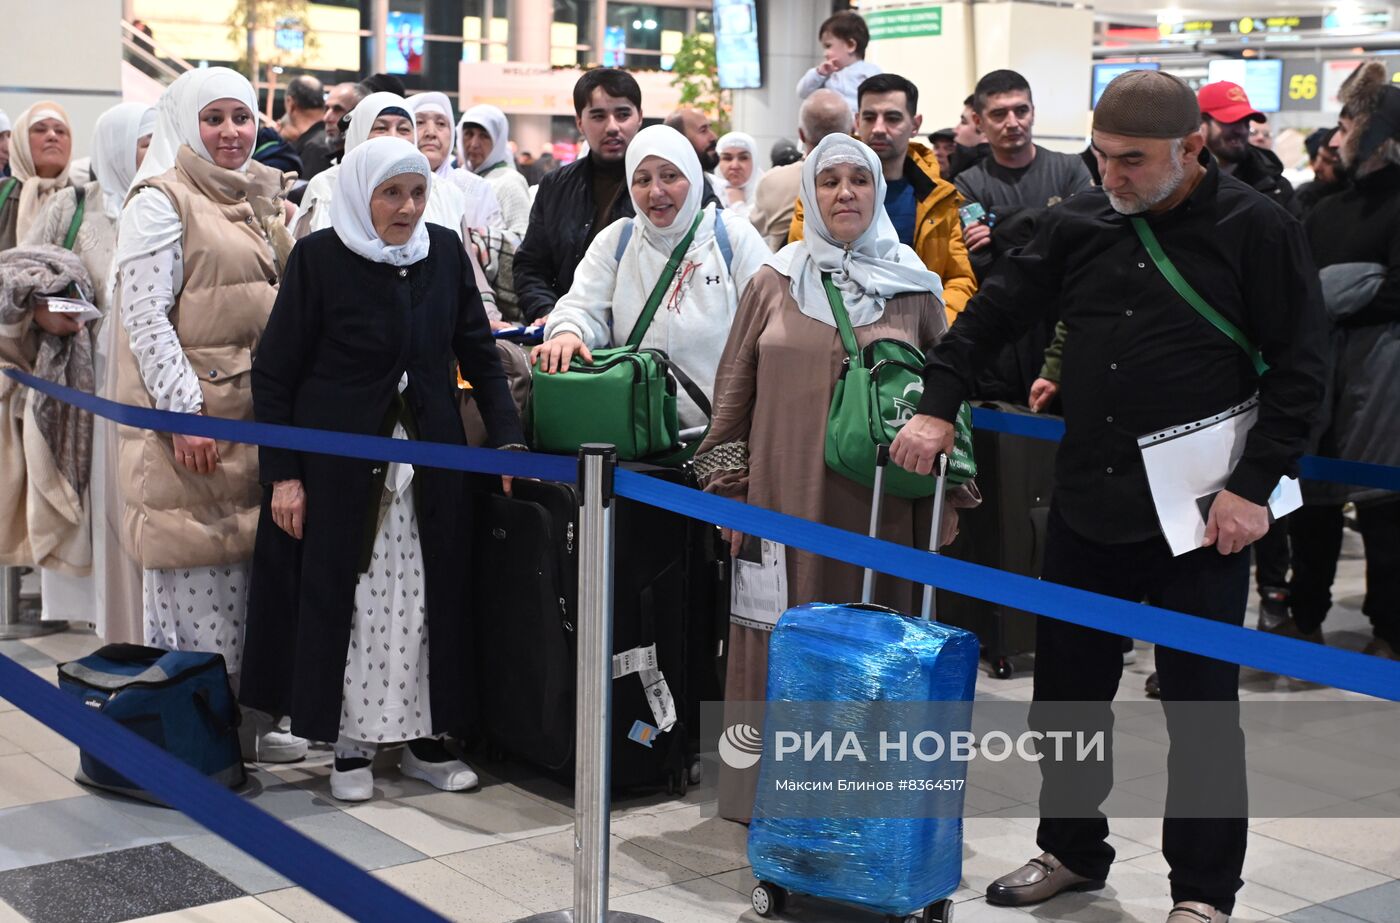 Авиакомпания Jazeera Airways начинает выполнять регулярные рейсы из аэропорта Домодедово